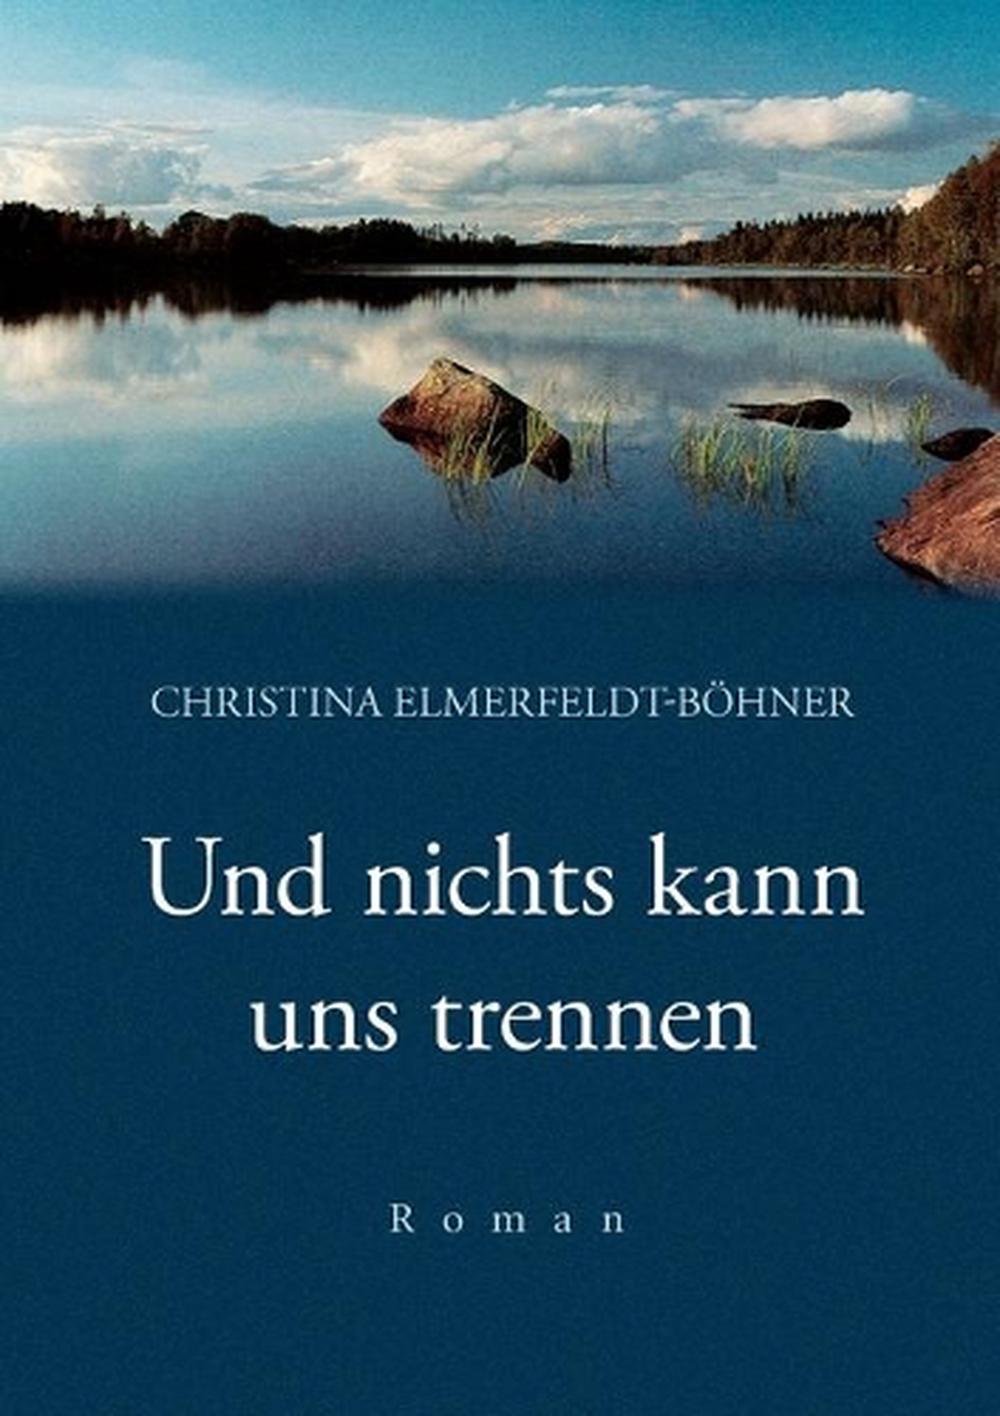 Und Nichts Kann Uns Trennen by Christina Elmerfeldt-Bhner (German ...